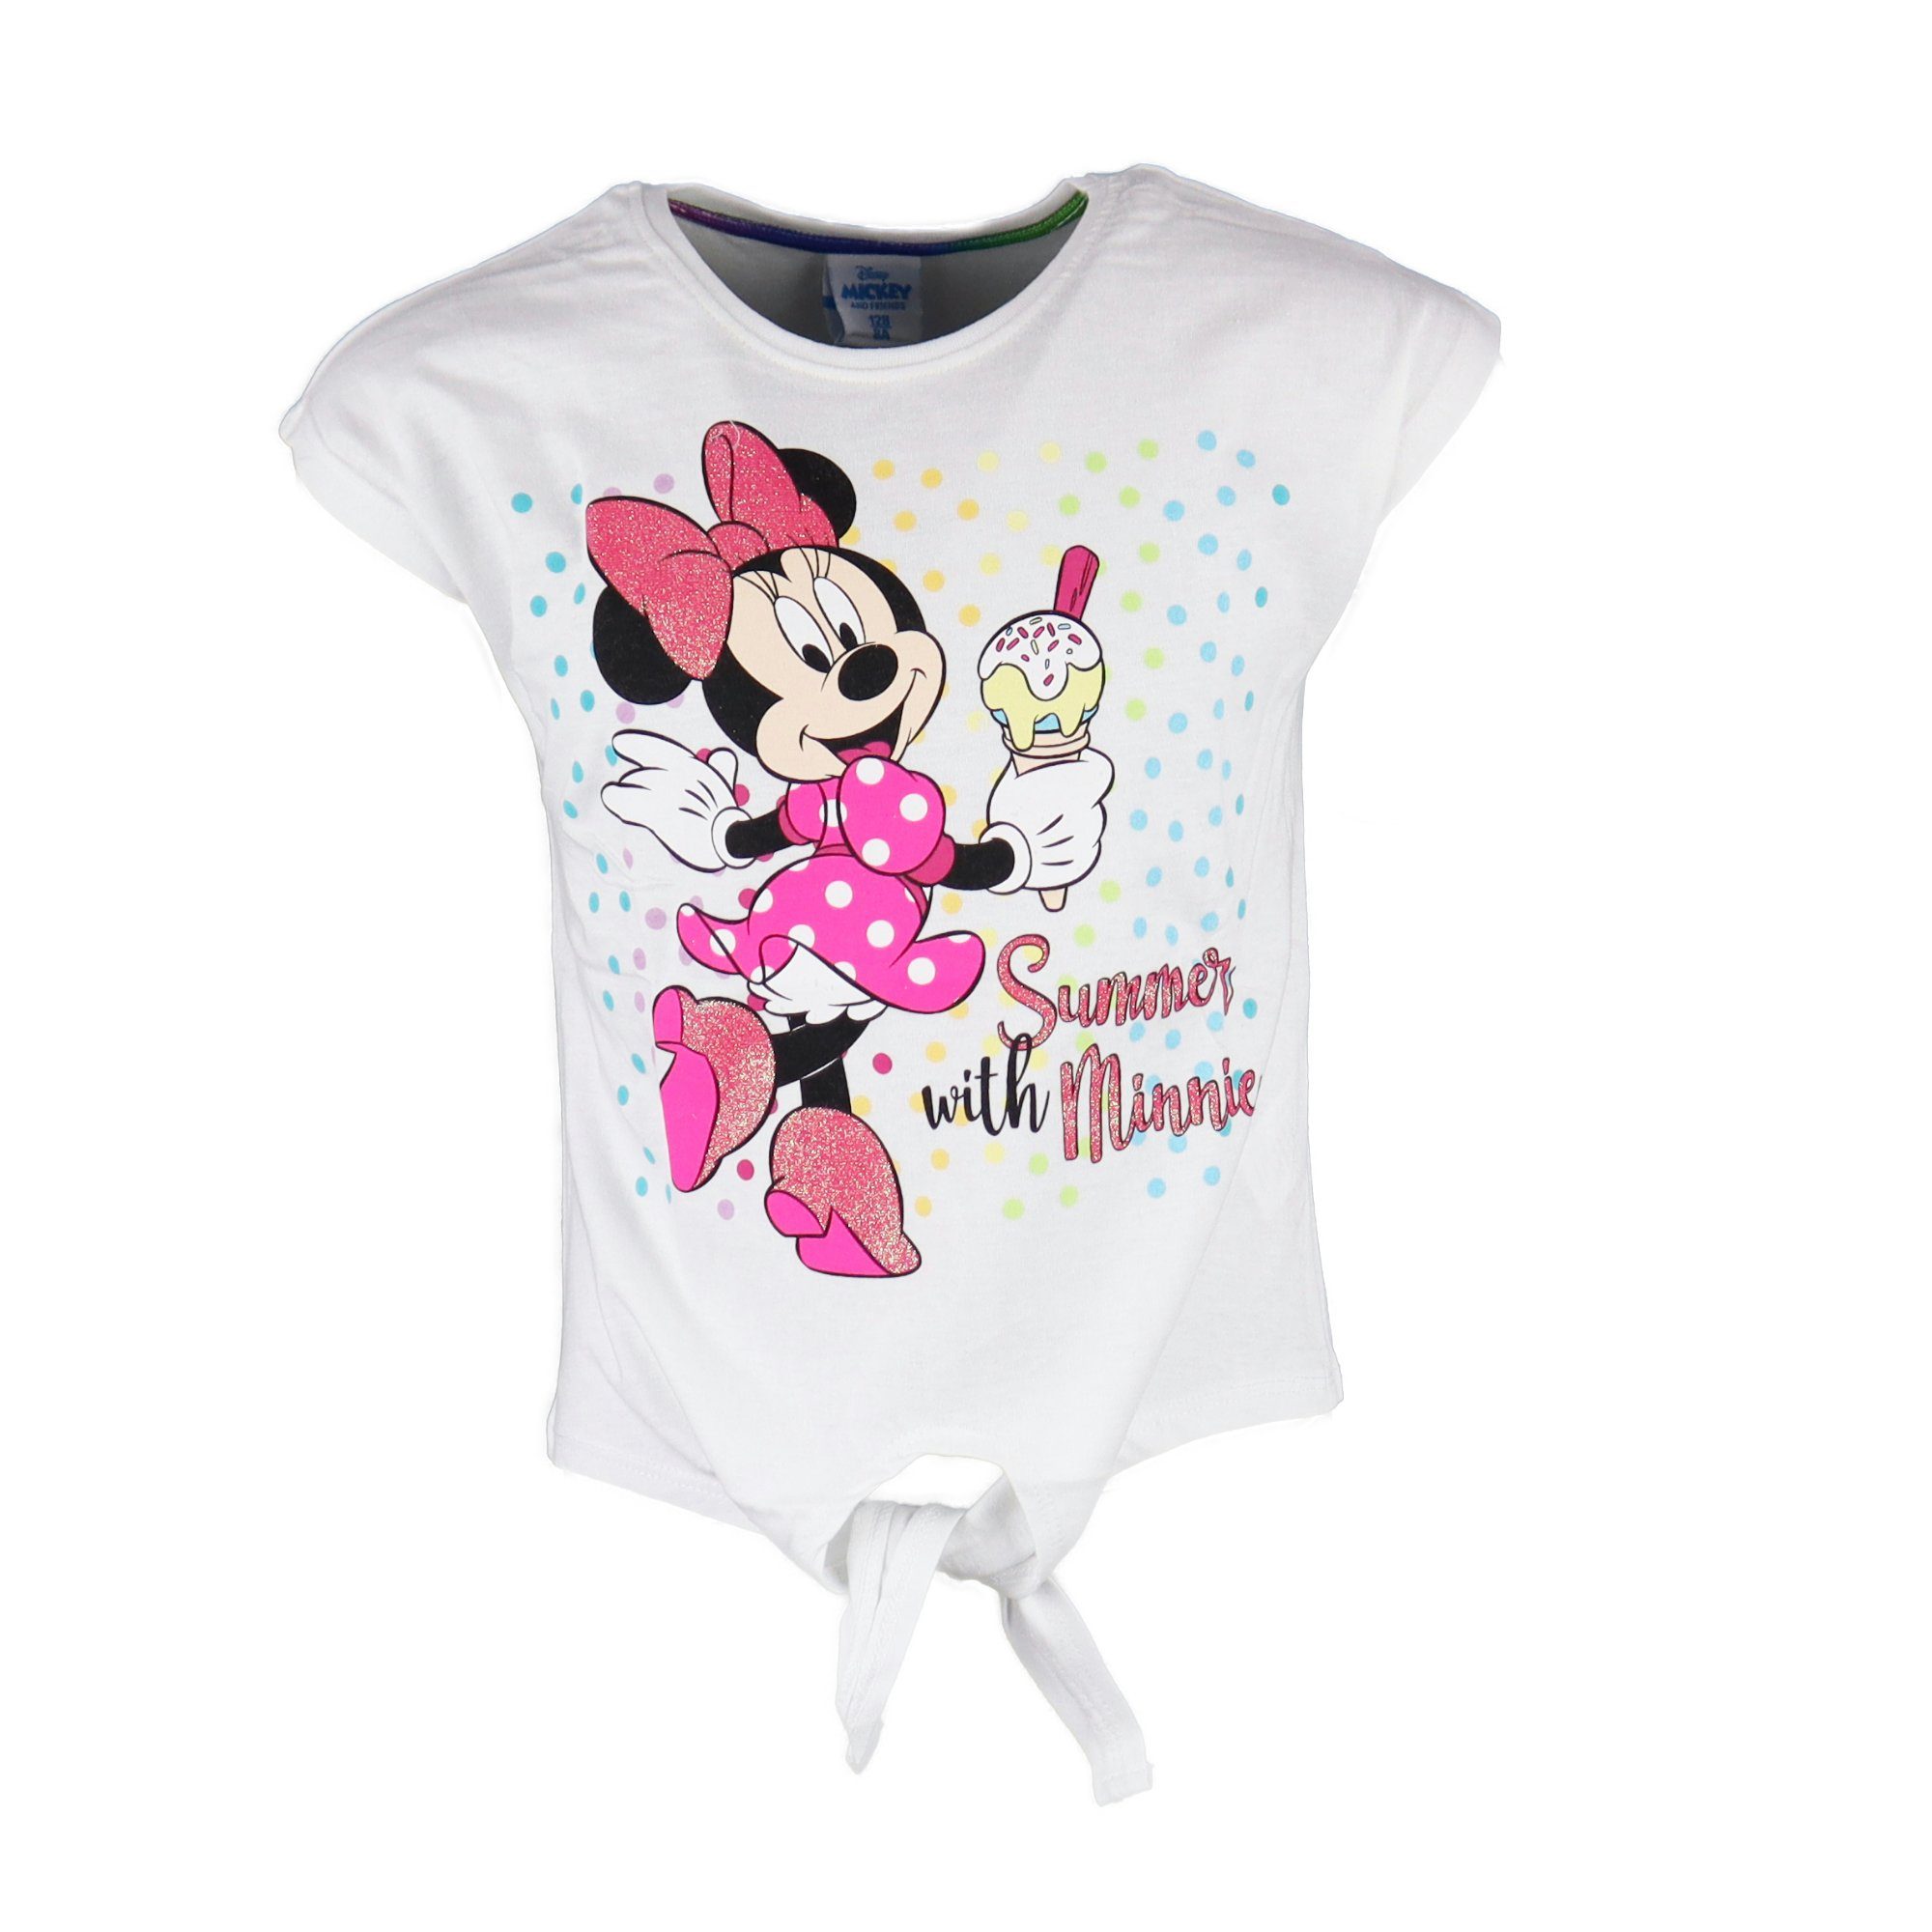 Disney Minnie Mouse T-Shirt Summer with Minnie Maus Kinder Mädchen Shirt Gr. 104 bis 134, 100% Baumwolle Weiß